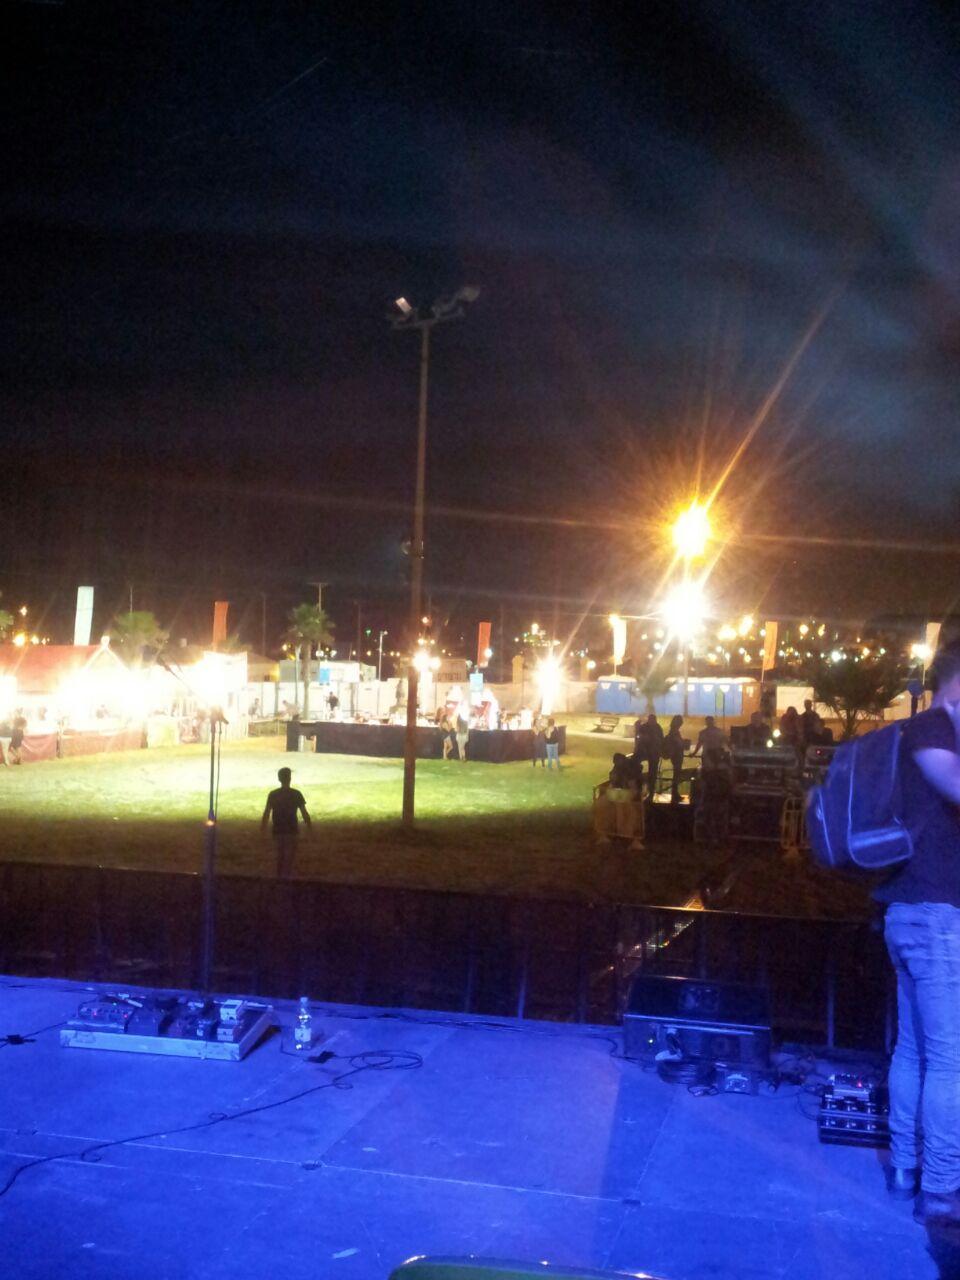 גלרייה - תלמידי קורס הפקת אירועים בפסטיבל הבירה, סוכות 2014 שהתקיים באשדוד, 2 מתוך 5